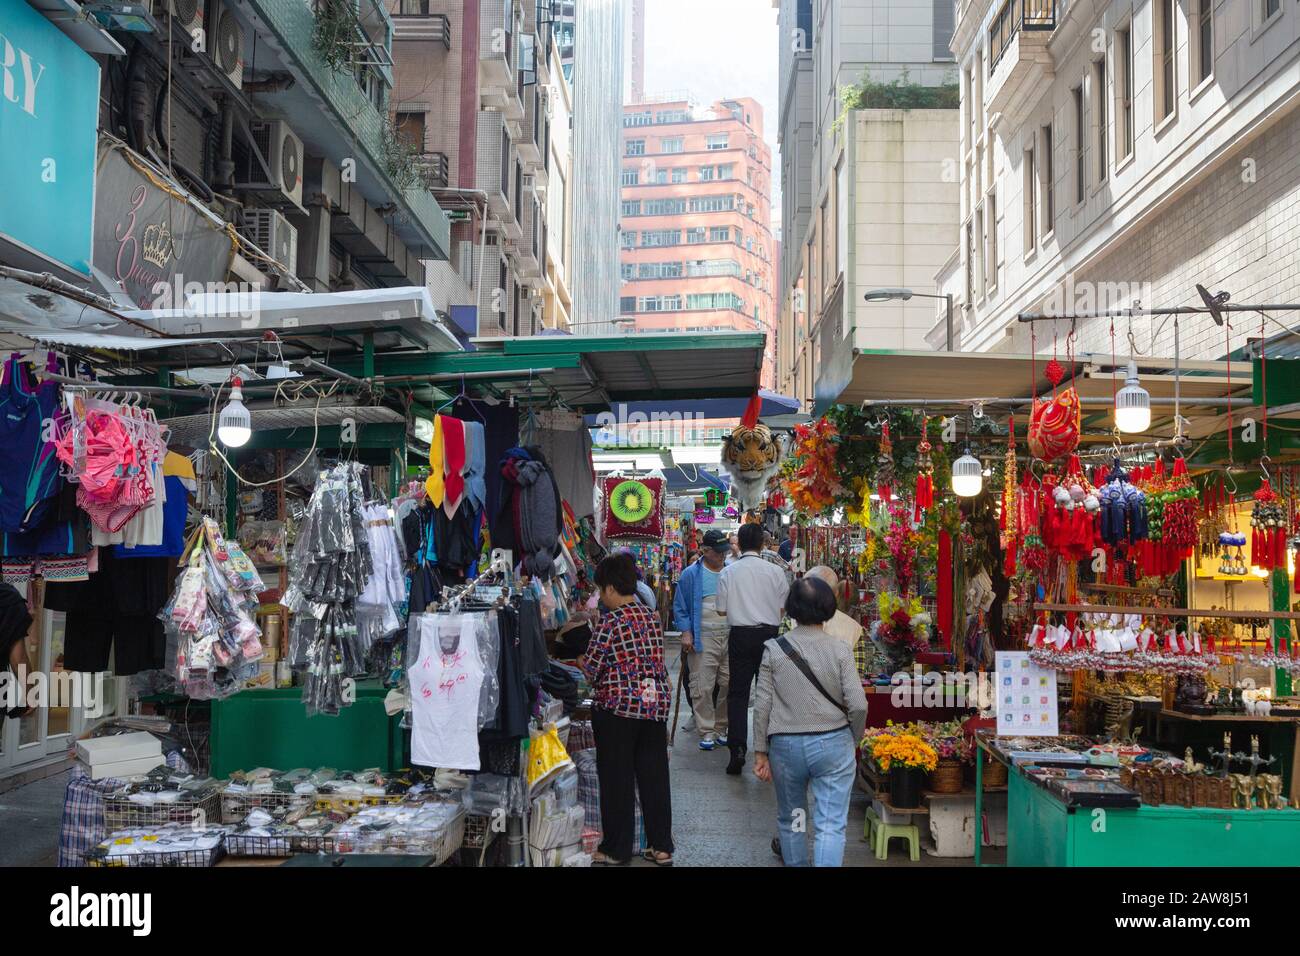 Hong Kong market - people shopping at the stalls, Wan Chai market, Hong Kong Island, Hong Kong Asia Stock Photo